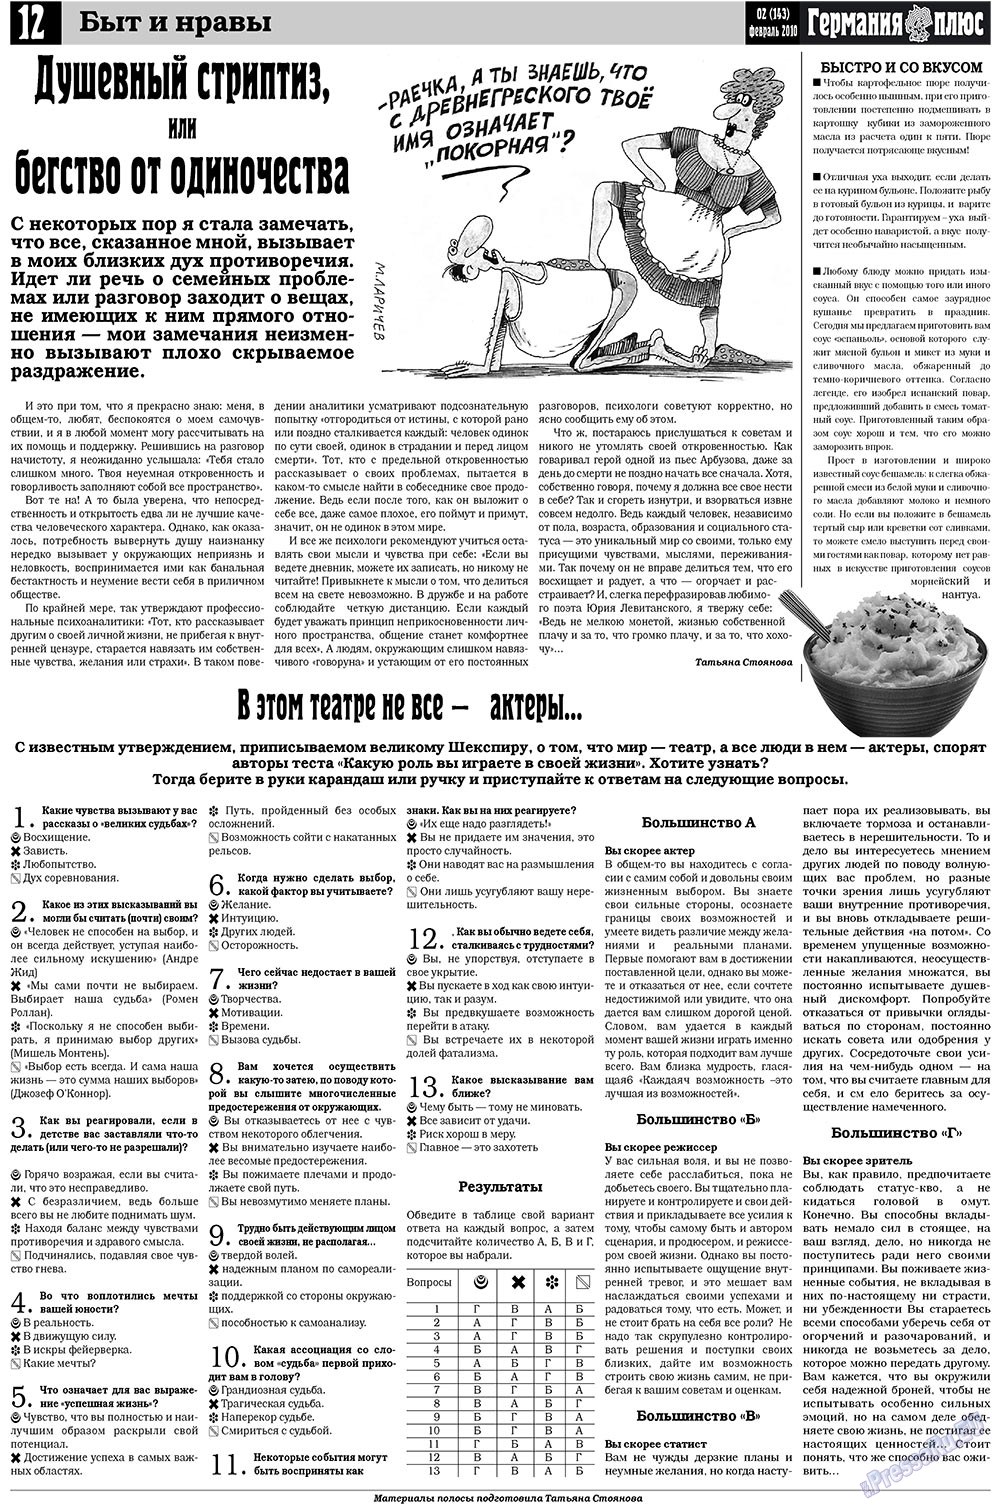 Германия плюс, газета. 2010 №2 стр.12